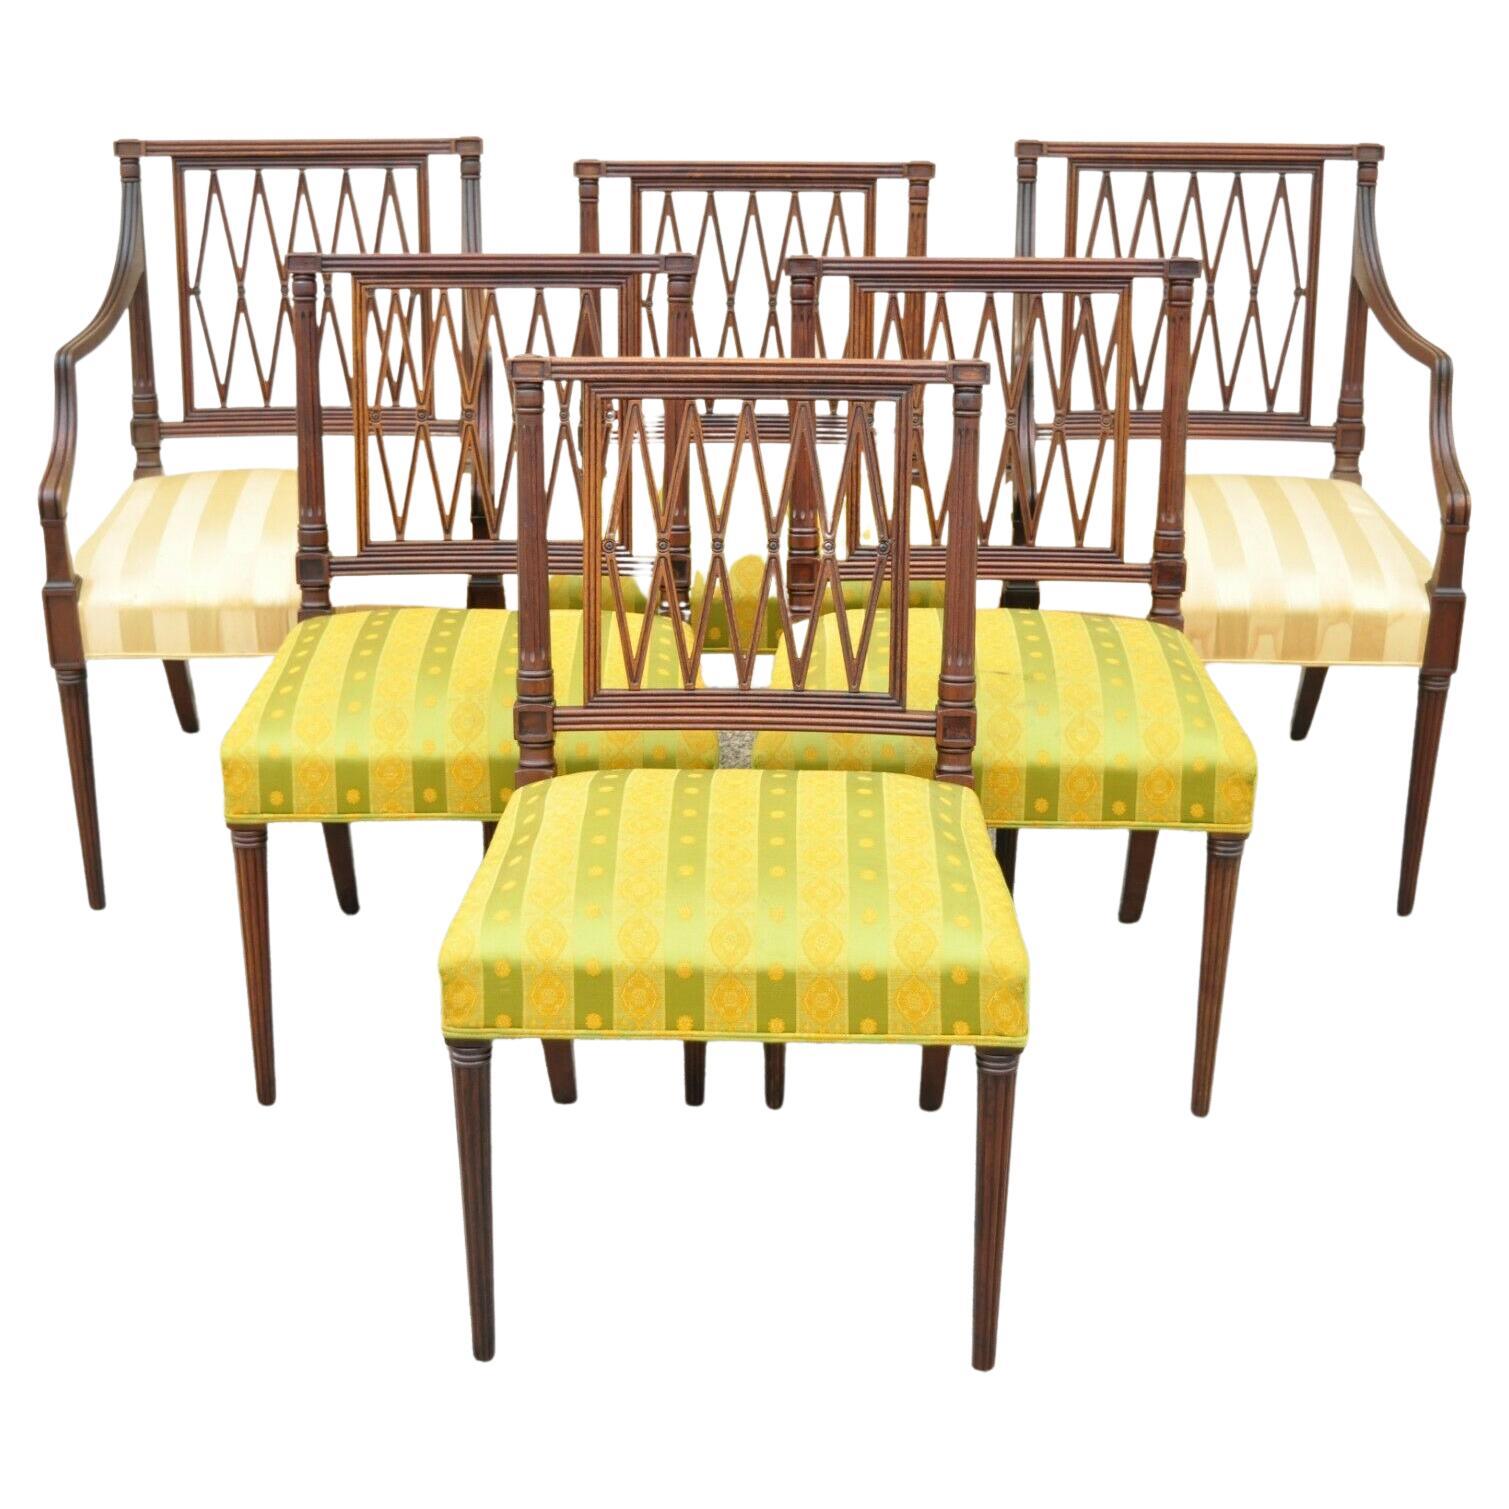 Antique Mahogany Lattice Back Hepplewhite Style Dining Chairs, Set of 6